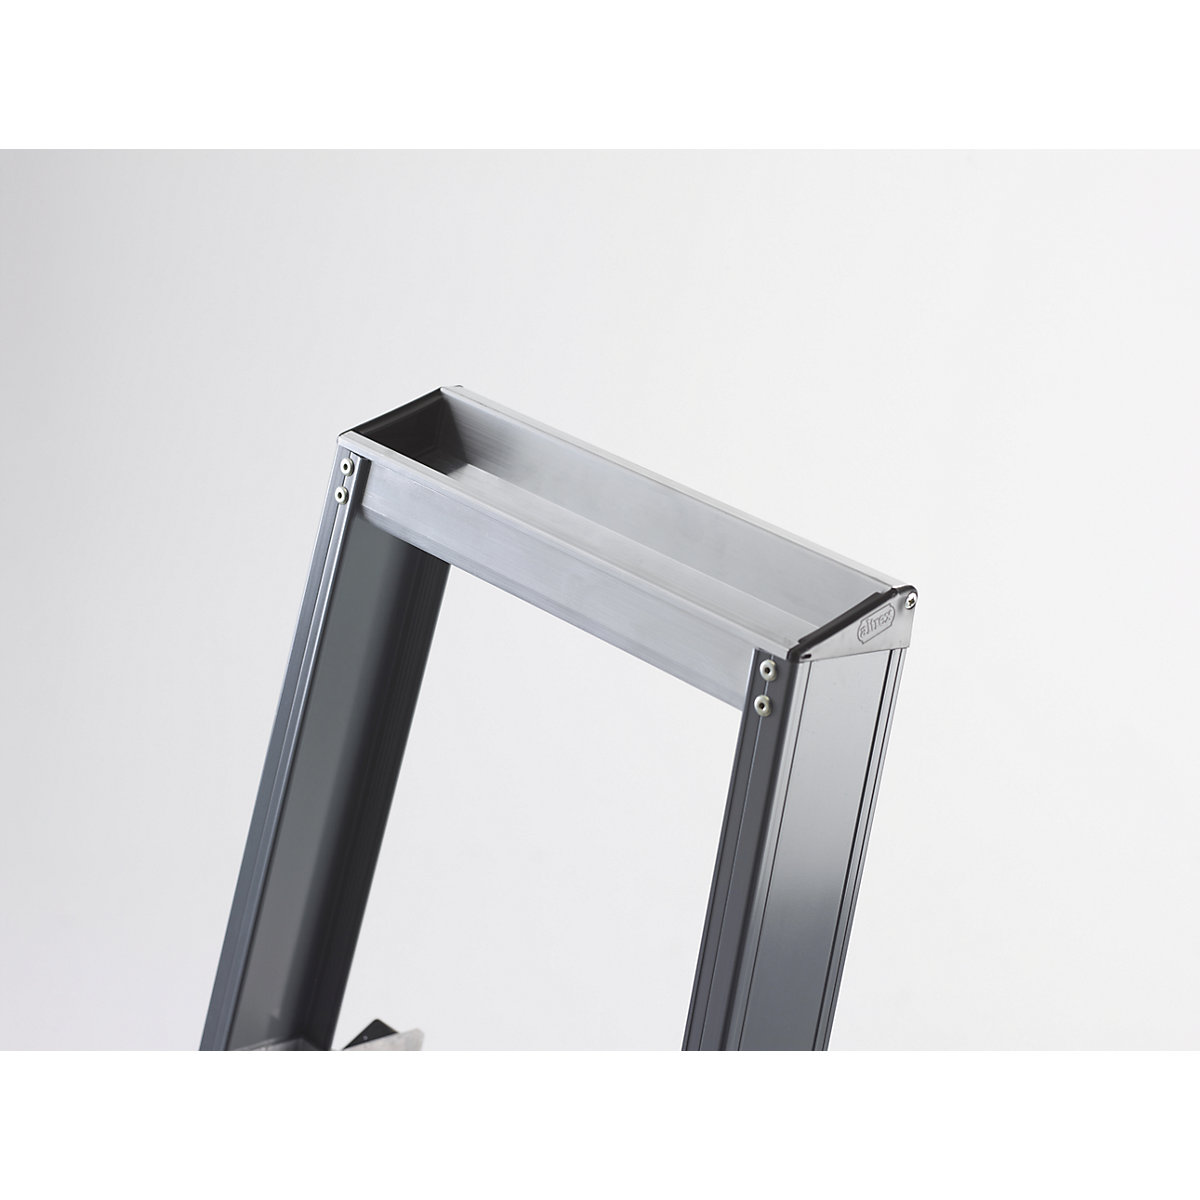 Altrex – Escalera tipo tijera de peldaños planos de aluminio, de ascenso por un lado (Imagen del producto 8)